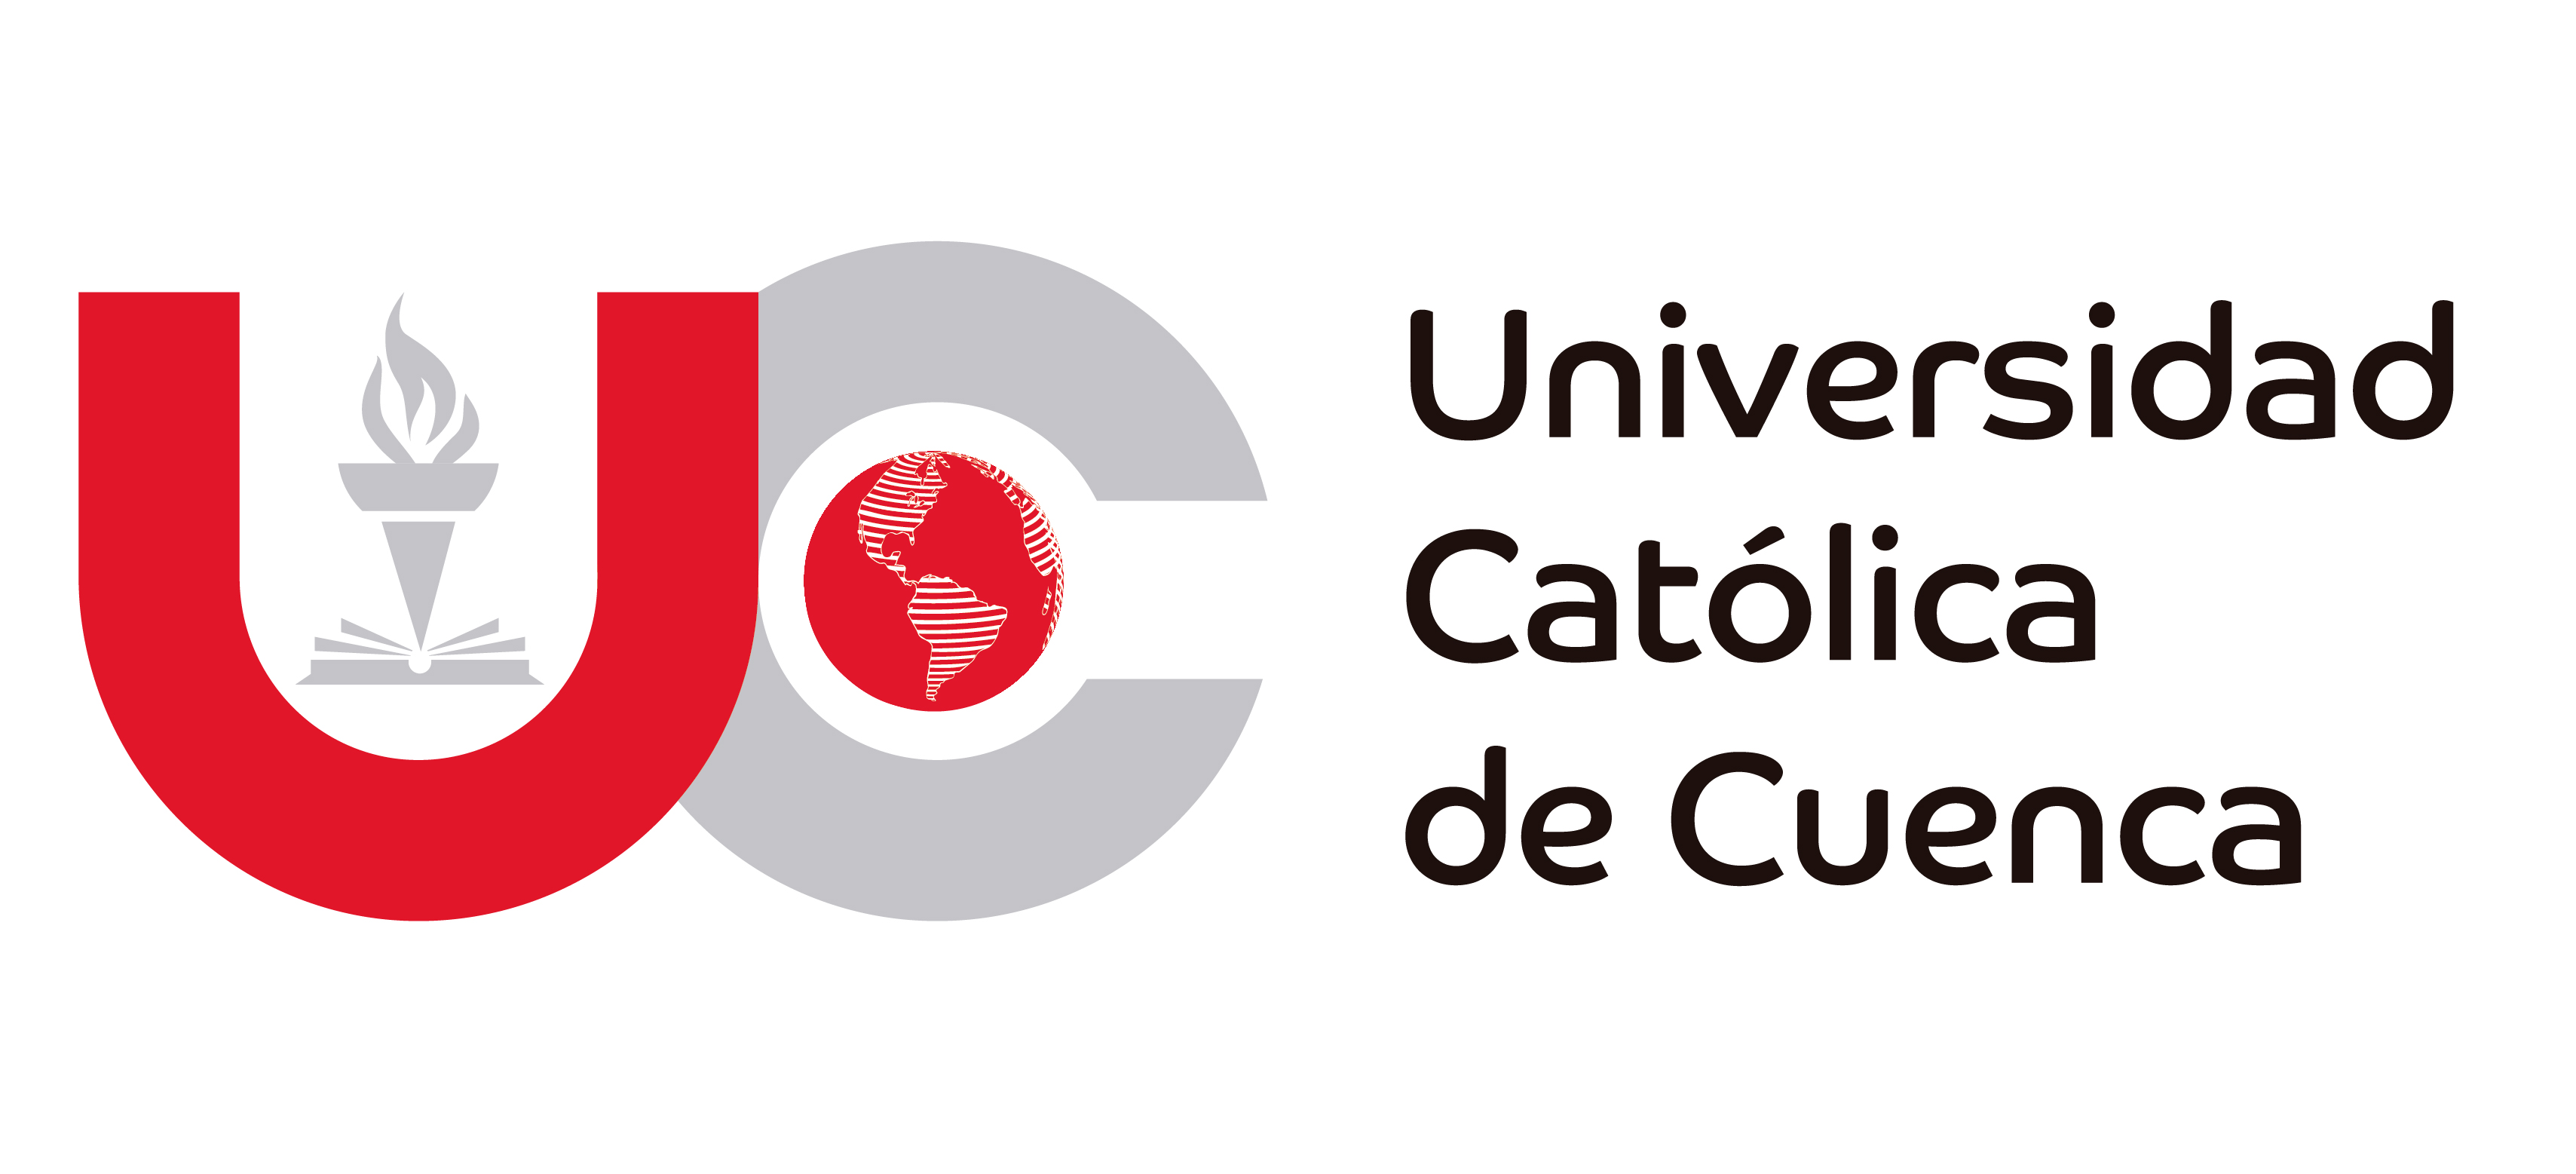 Cuerda amante atleta Universidad Católica de Cuenca - Wikipedia, la enciclopedia libre